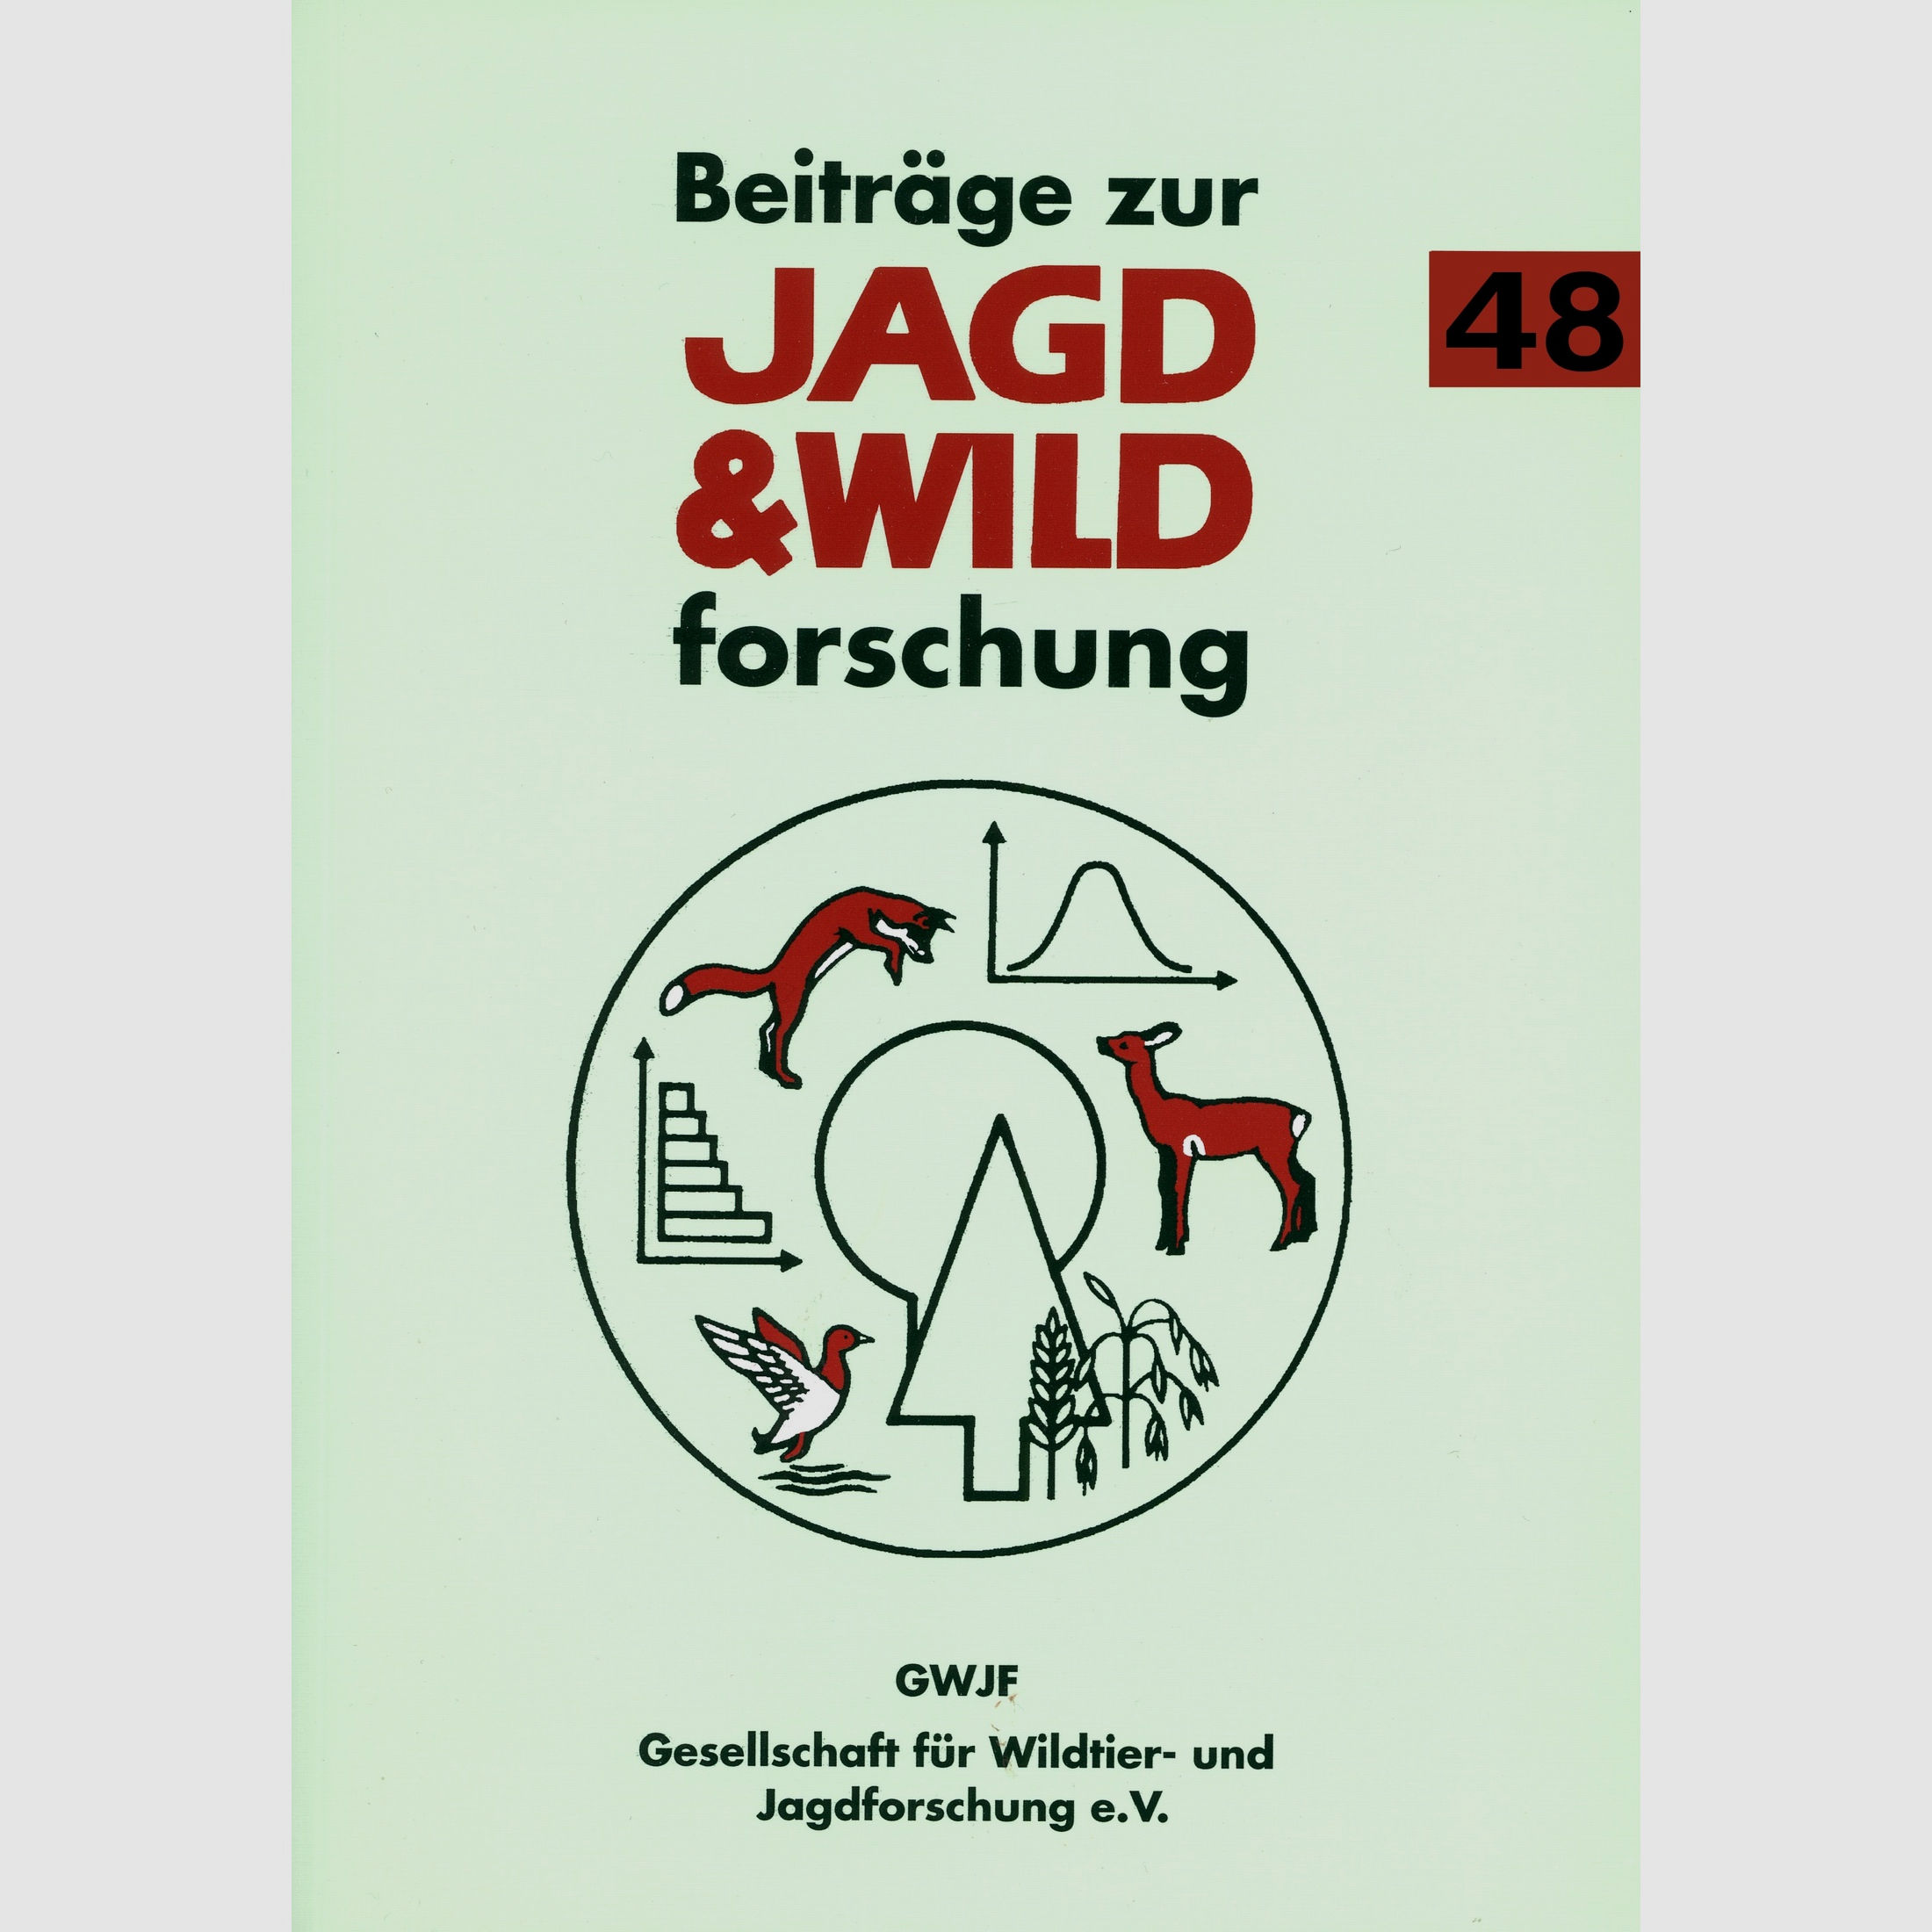 Beiträge zur Jagd- und Wildforschung, Prof. Dr. Michael Stub